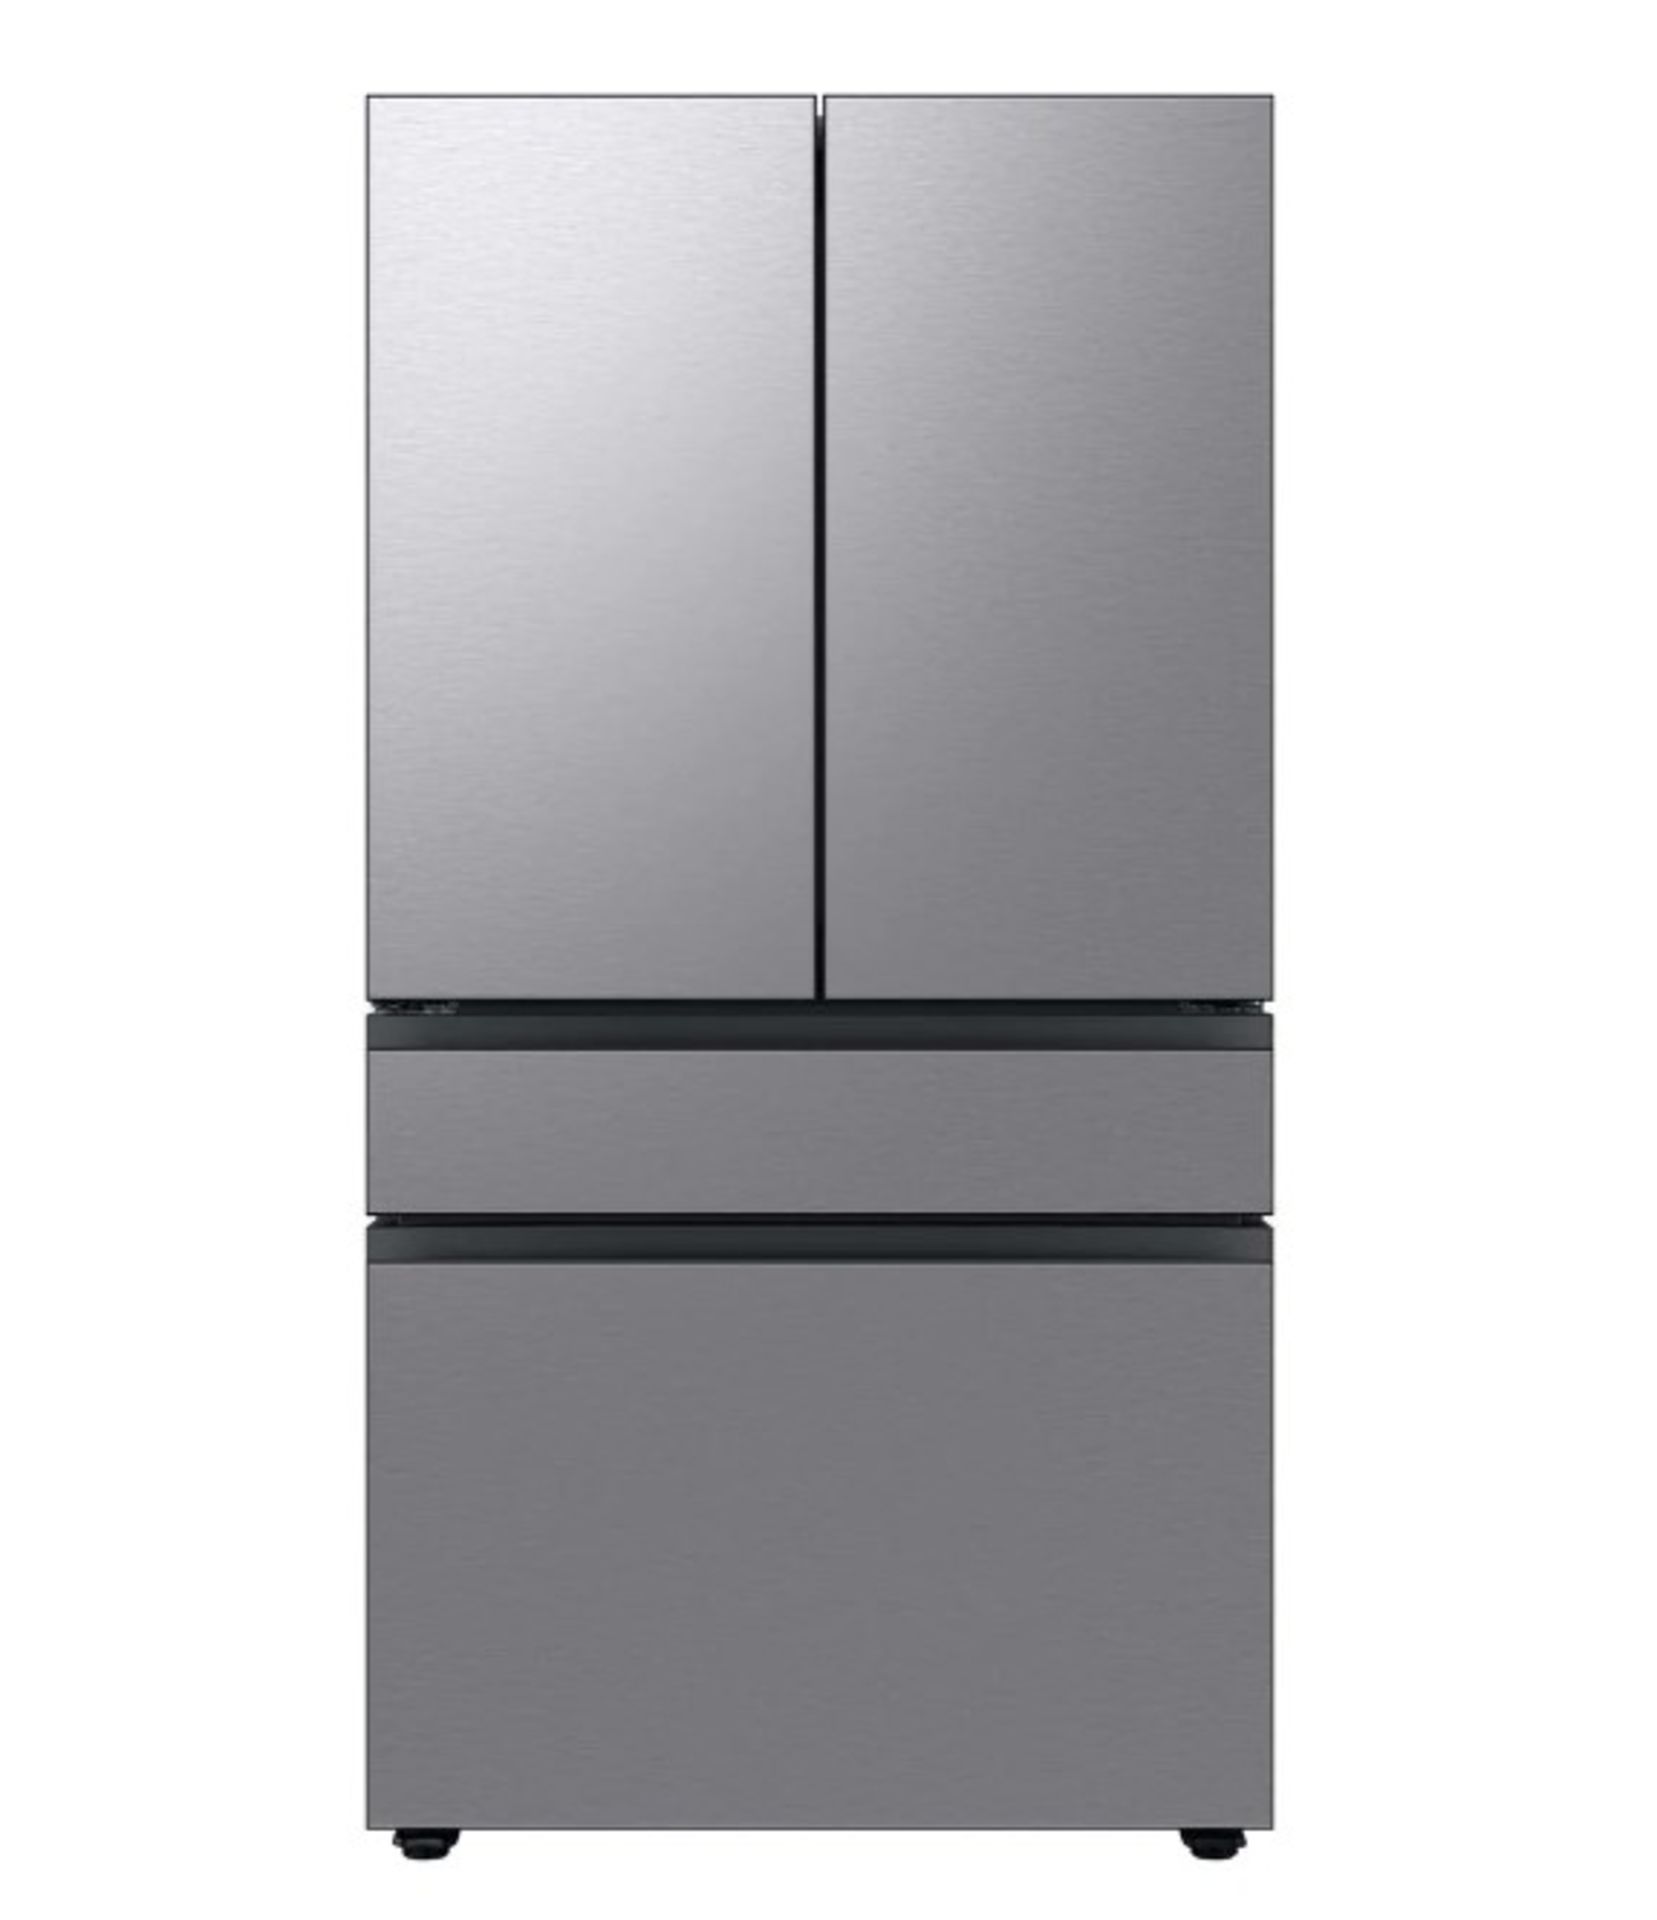 Samsung Bespoke 23 cu. ft. 4-Door French Door Smart with Beverage Center - Stainless Steel